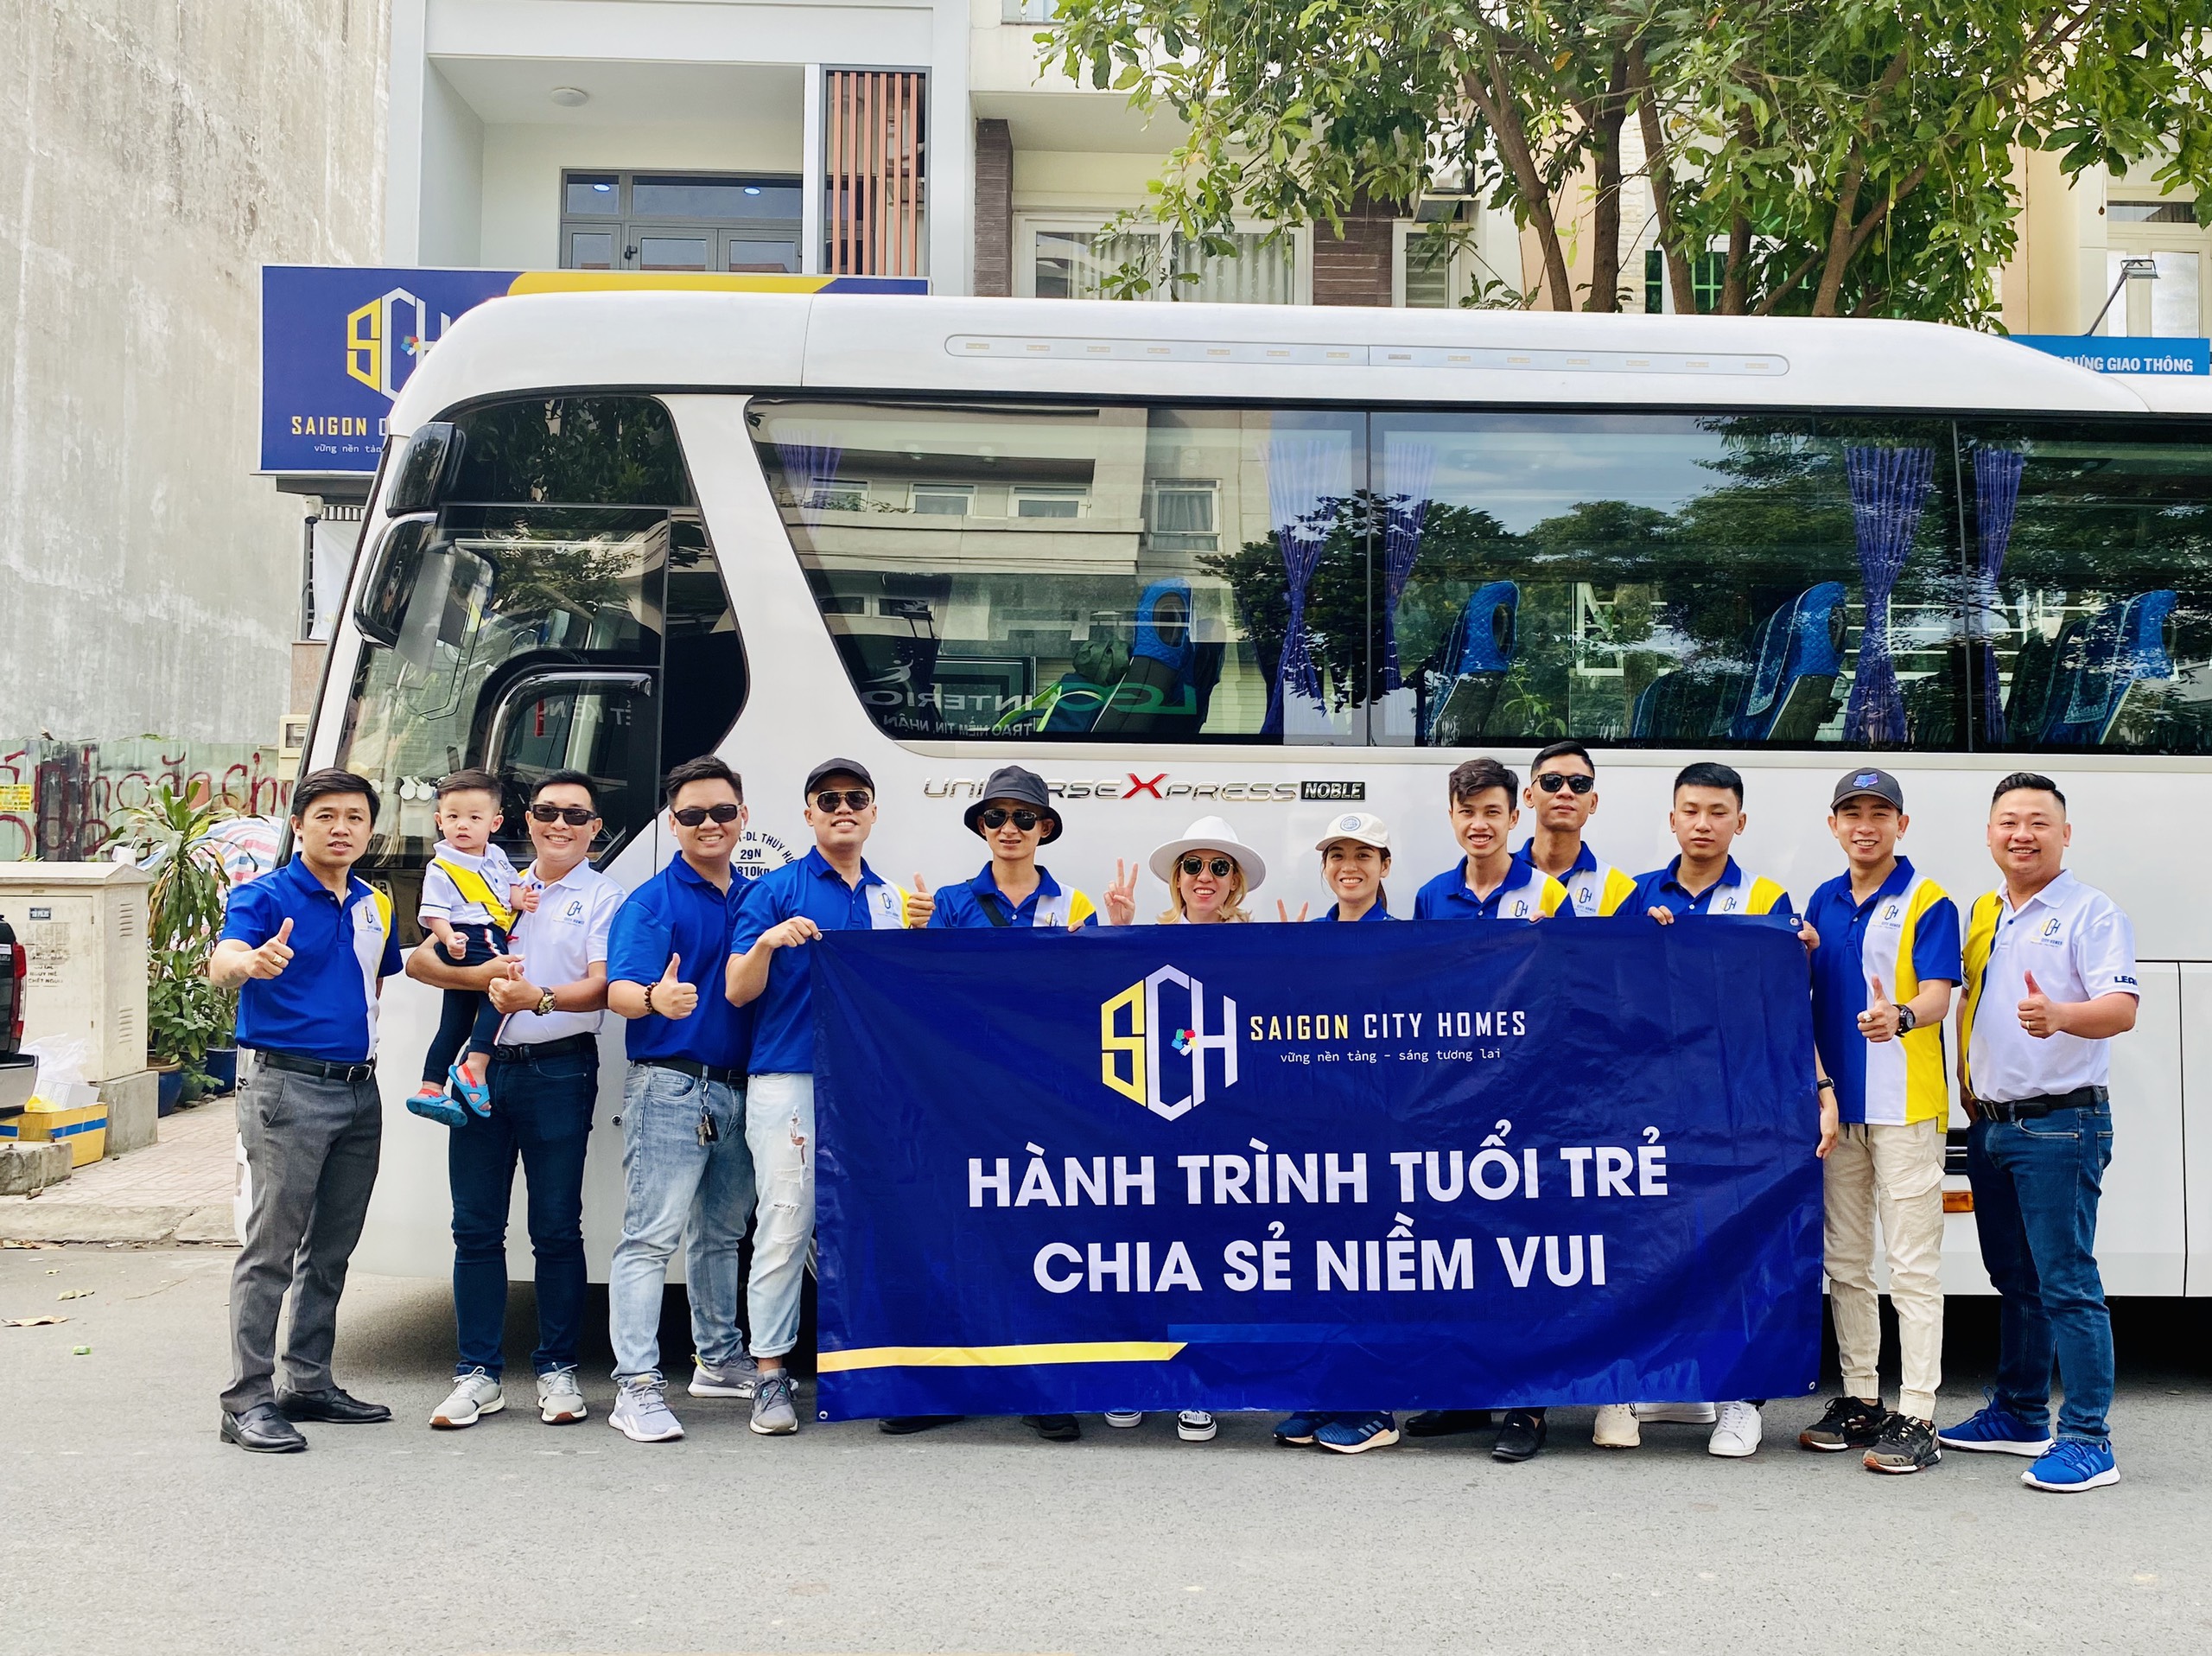 Chuyến thiện nguyện SCH cuối 2020 tại Chùa Hồng Quang với nhiều cảm xúc